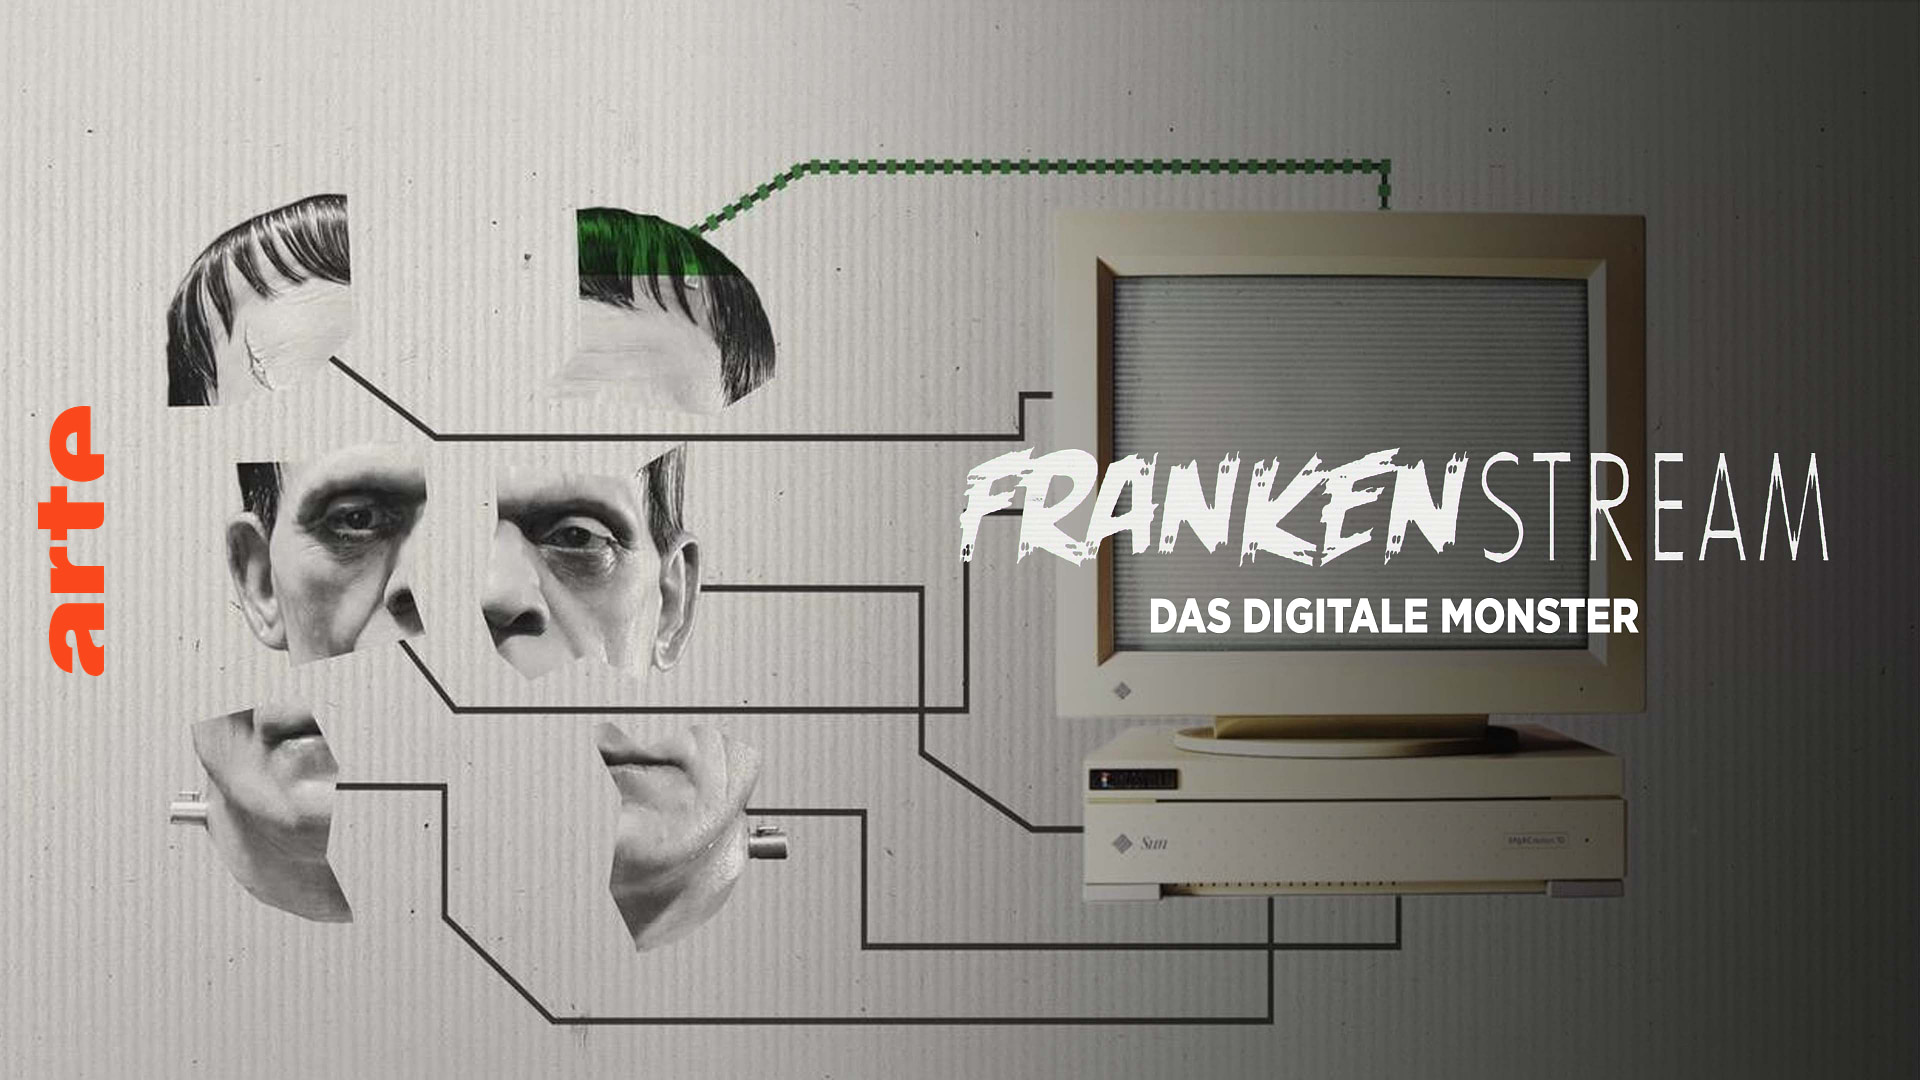 Frankenstream, das digitale Monster (1/4)